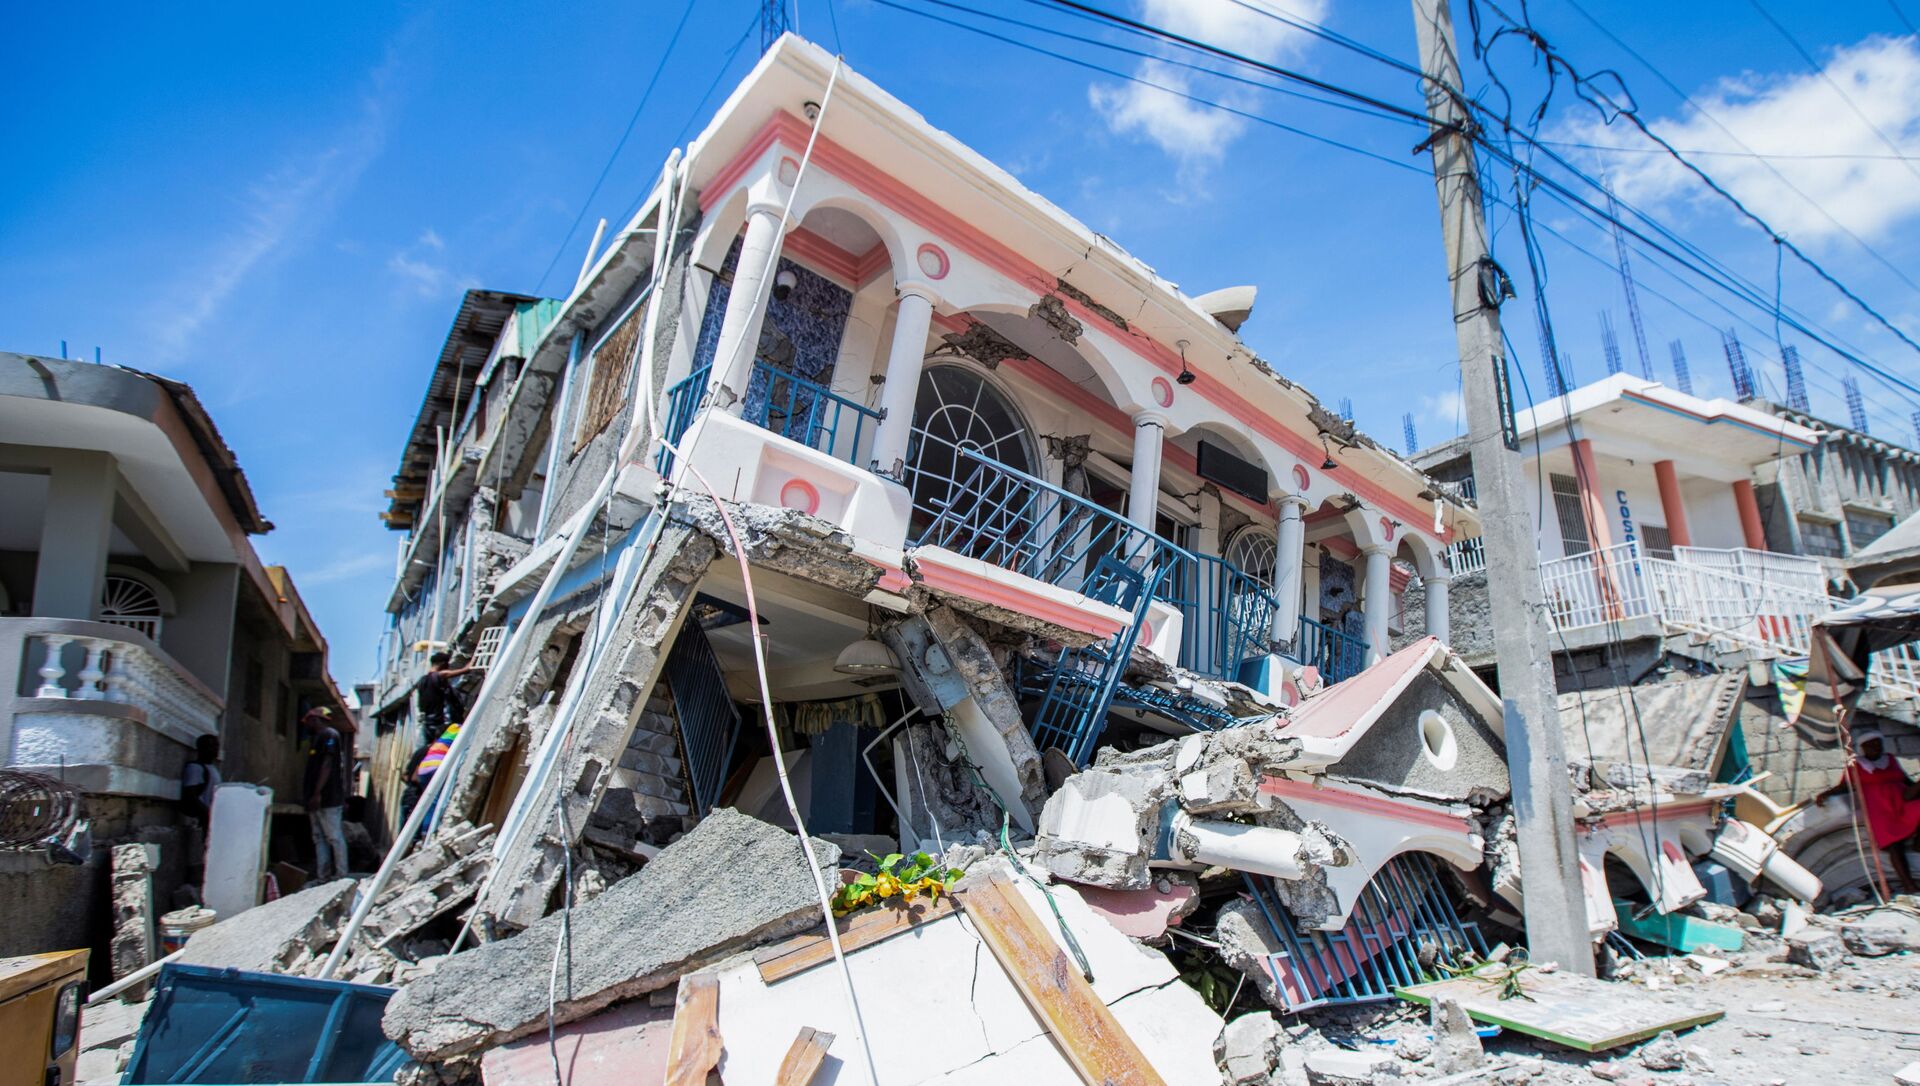 Destructions en Haïti après le séisme, le 14 août 2021 - Sputnik Afrique, 1920, 17.08.2021